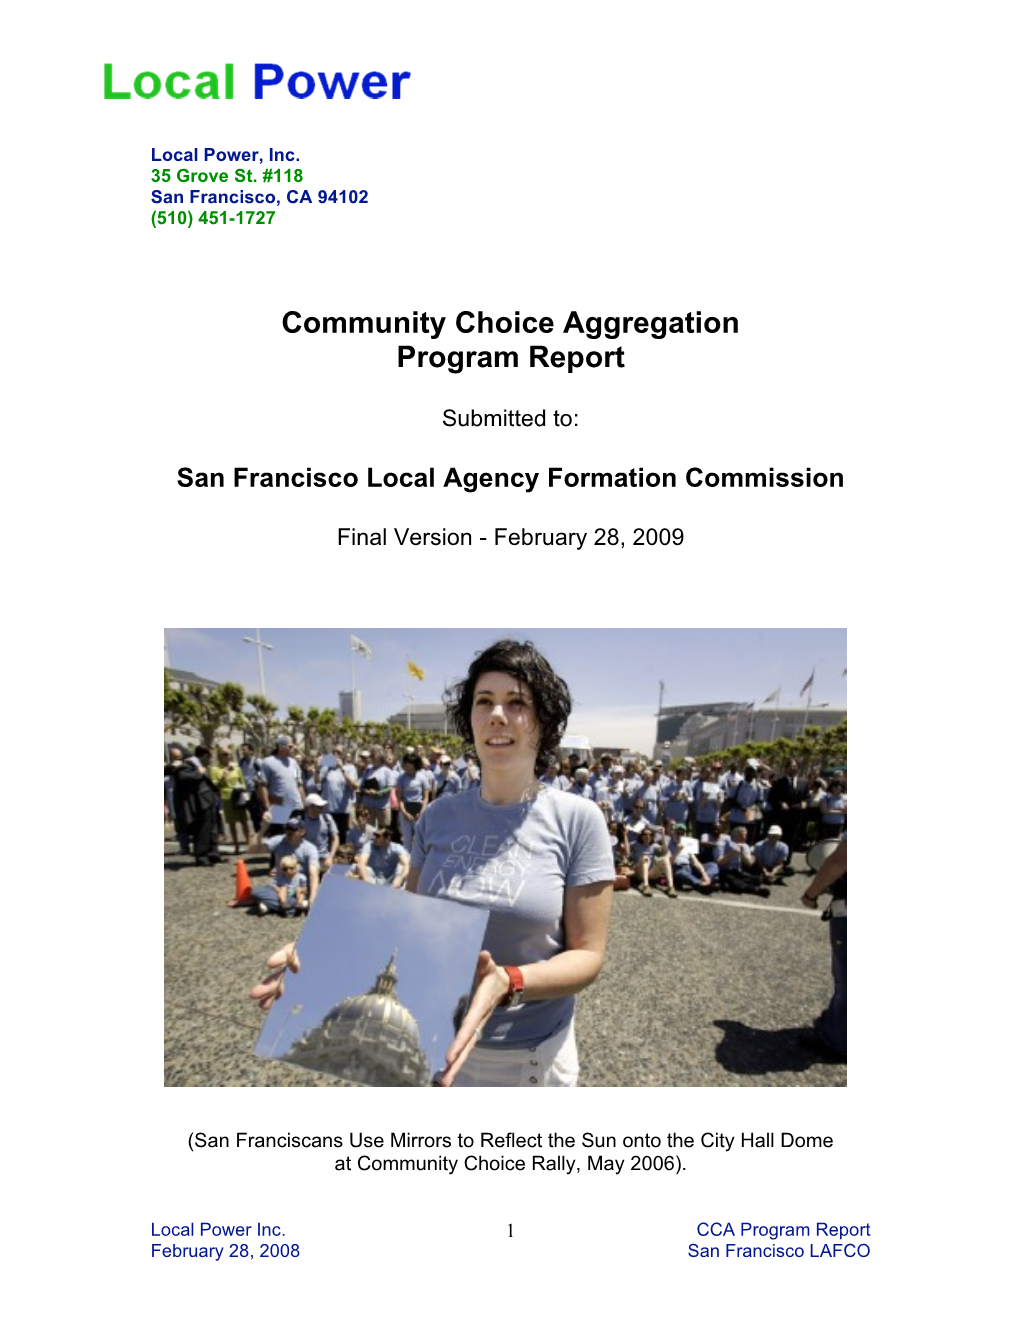 LPI San Francisco Program Report (2009)